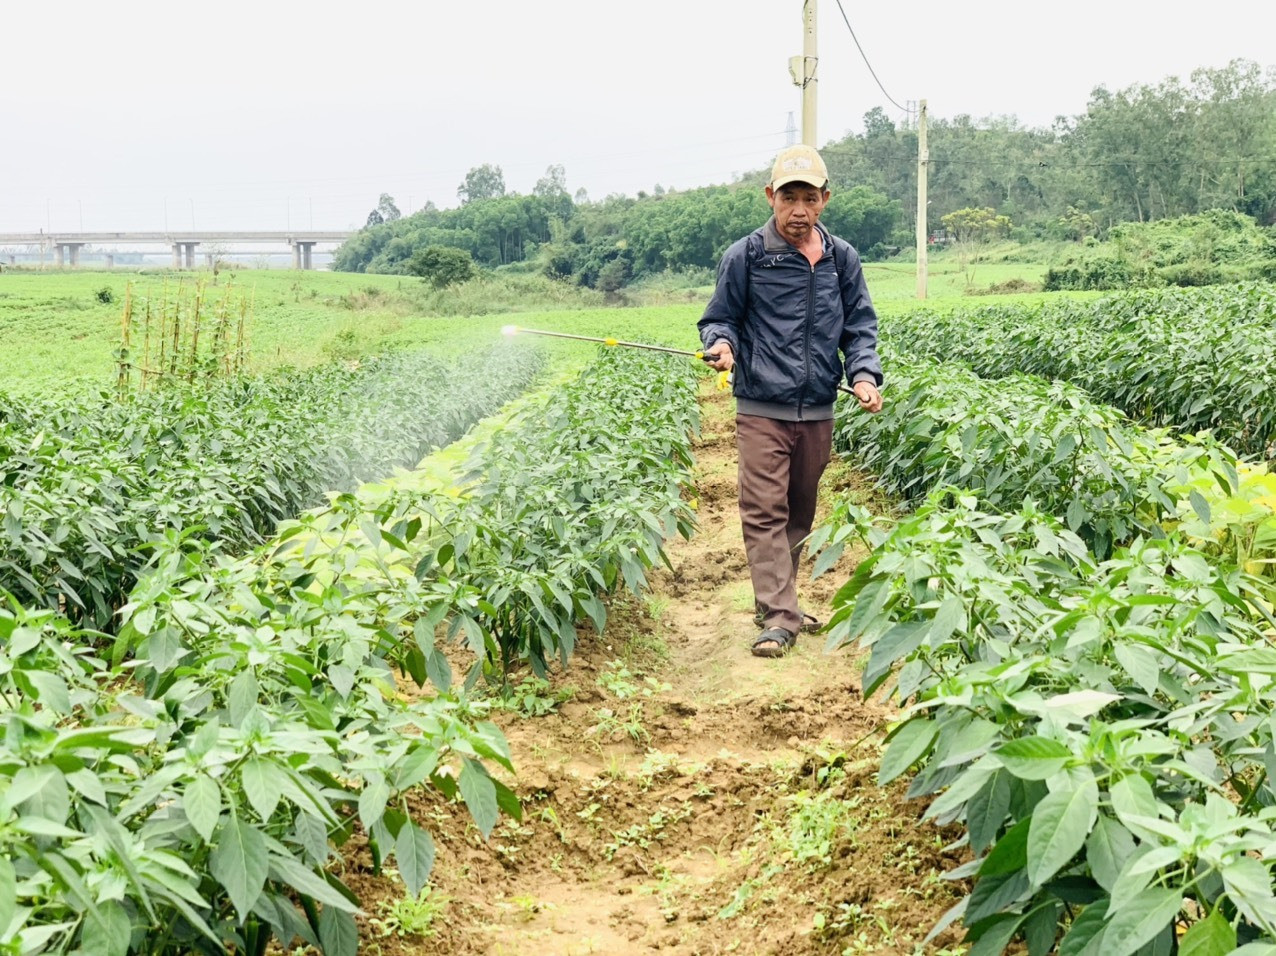 Mô hình liên kết sản xuất ớt xuất khẩu ở Duy Xuyên giúp nhà nông nâng cao nguồn thu nhập và ổn định đầu ra sản phẩm. Ảnh: N.S